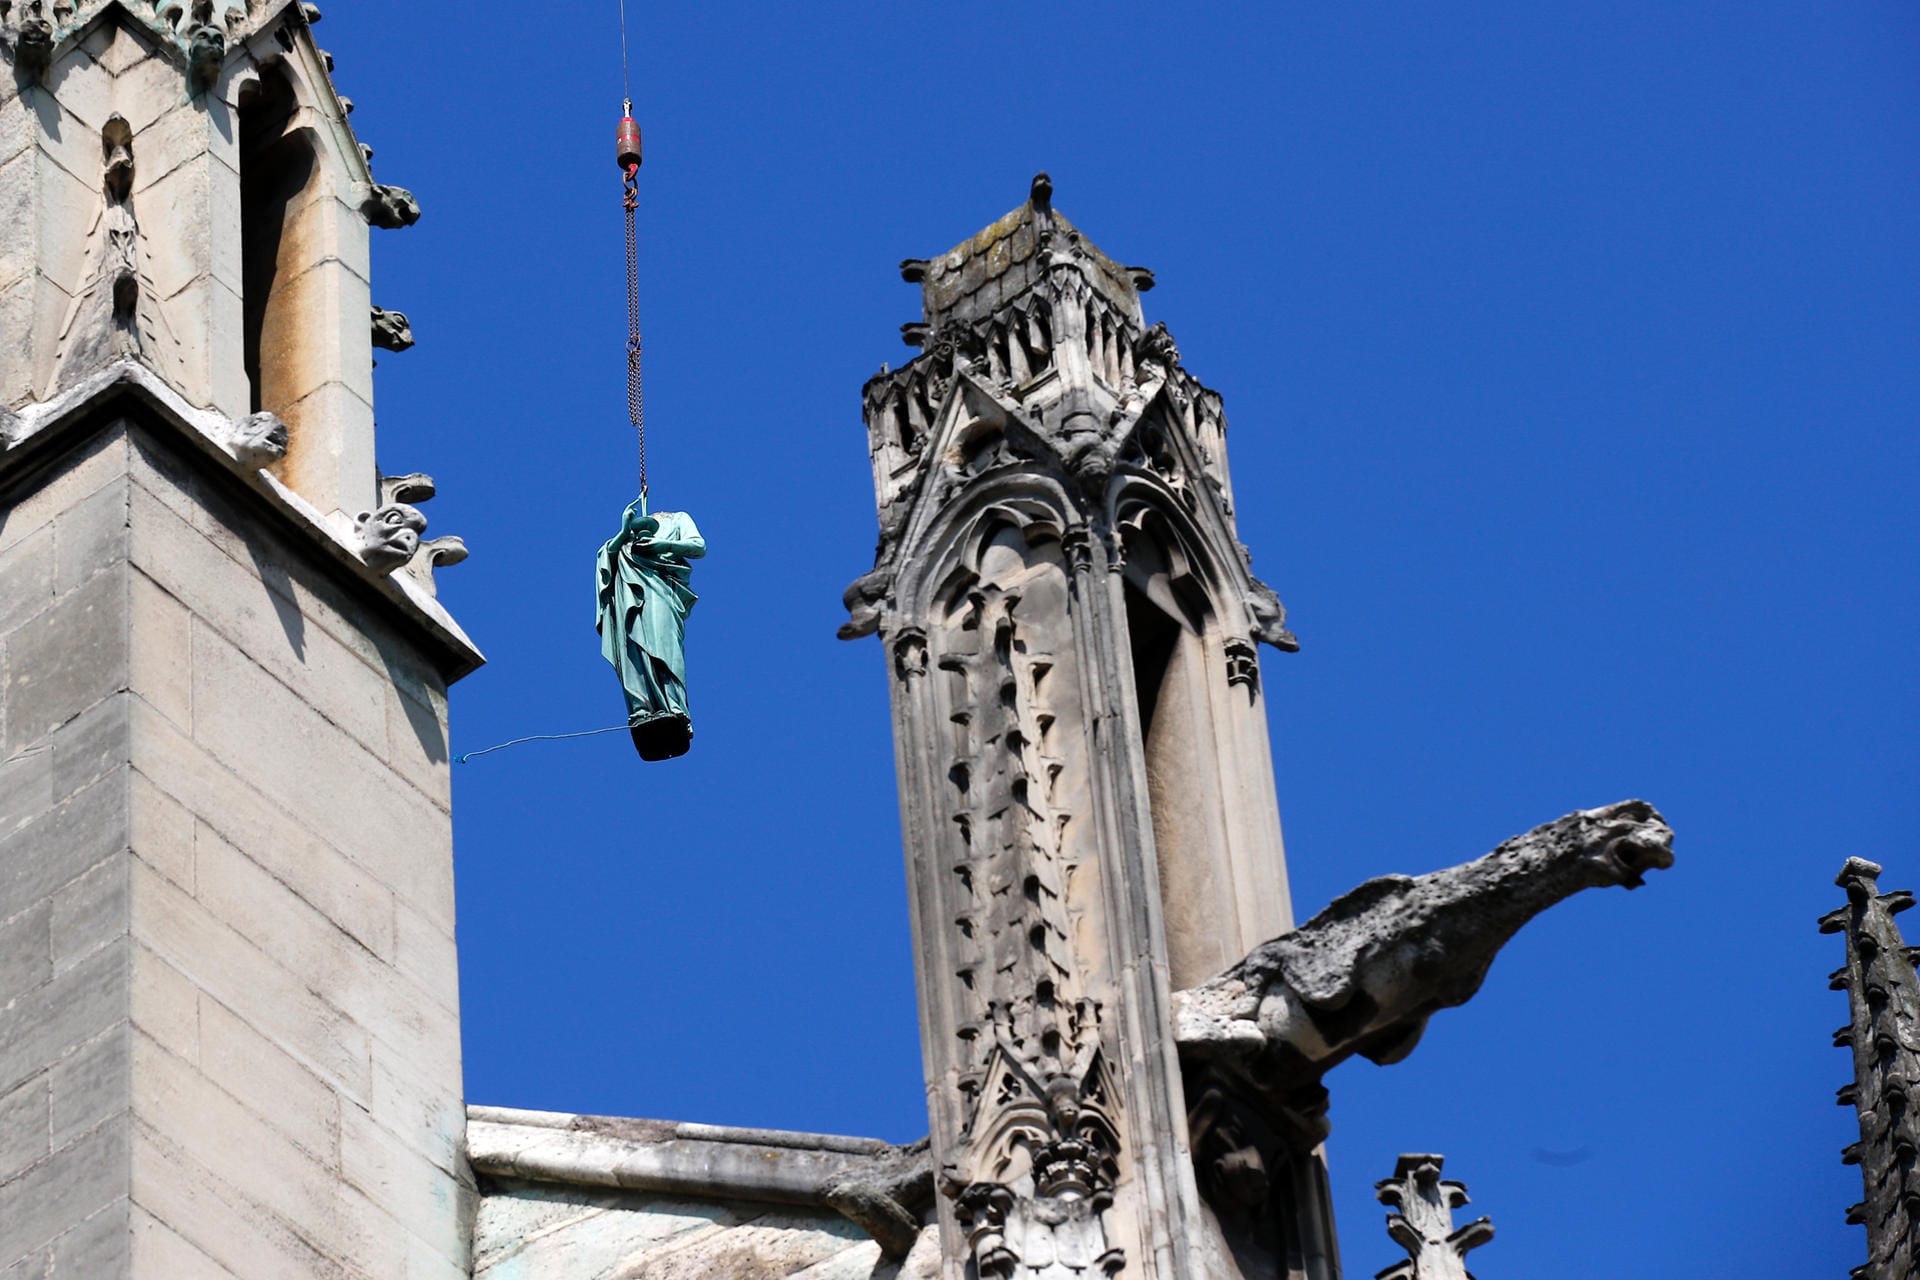 Statue wird von Notre-Dame gehoben: Am 11. April, nur vier Tage vor dem Brand, sind insgesamt 16 Statuen – zwölf Apostel und vier Evangelisten – vom Dach der Kathedrale geholt worden. Die Kunstwerke sollten restauriert werden und sind so dem Feuer entgangen.